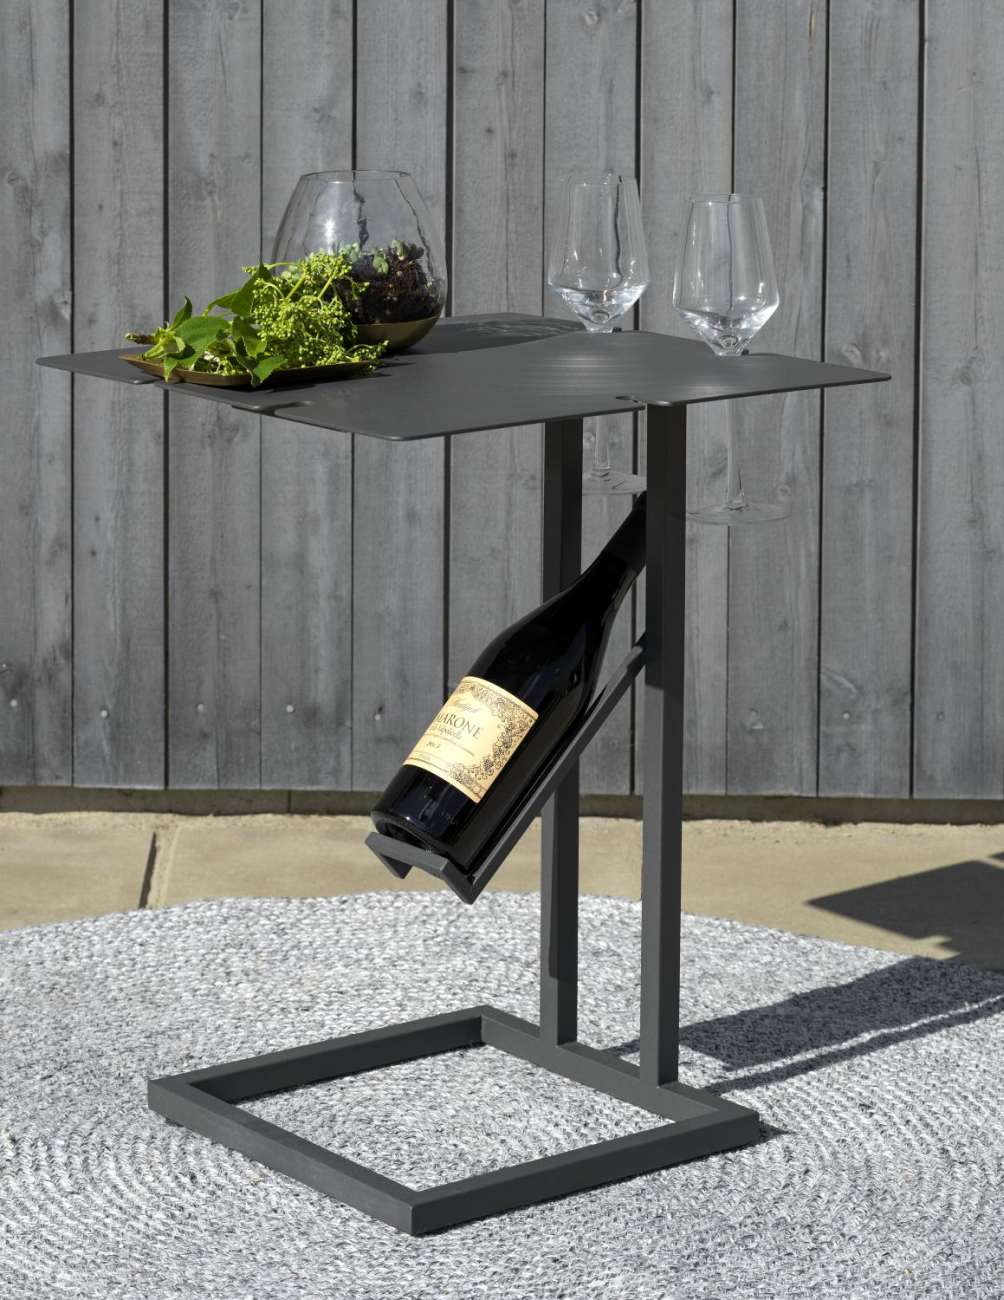 Der Gartenbeistelltisch Gonesse überzeugt mit seinem modernen Design. Gefertigt wurde die Tischplatte aus Metall und besitzt einen schwarze Farbton. Das Gestell ist auch aus Metall und hat eine schwarze Farbe. Der Tisch besitzt eine Länge von 42 cm.